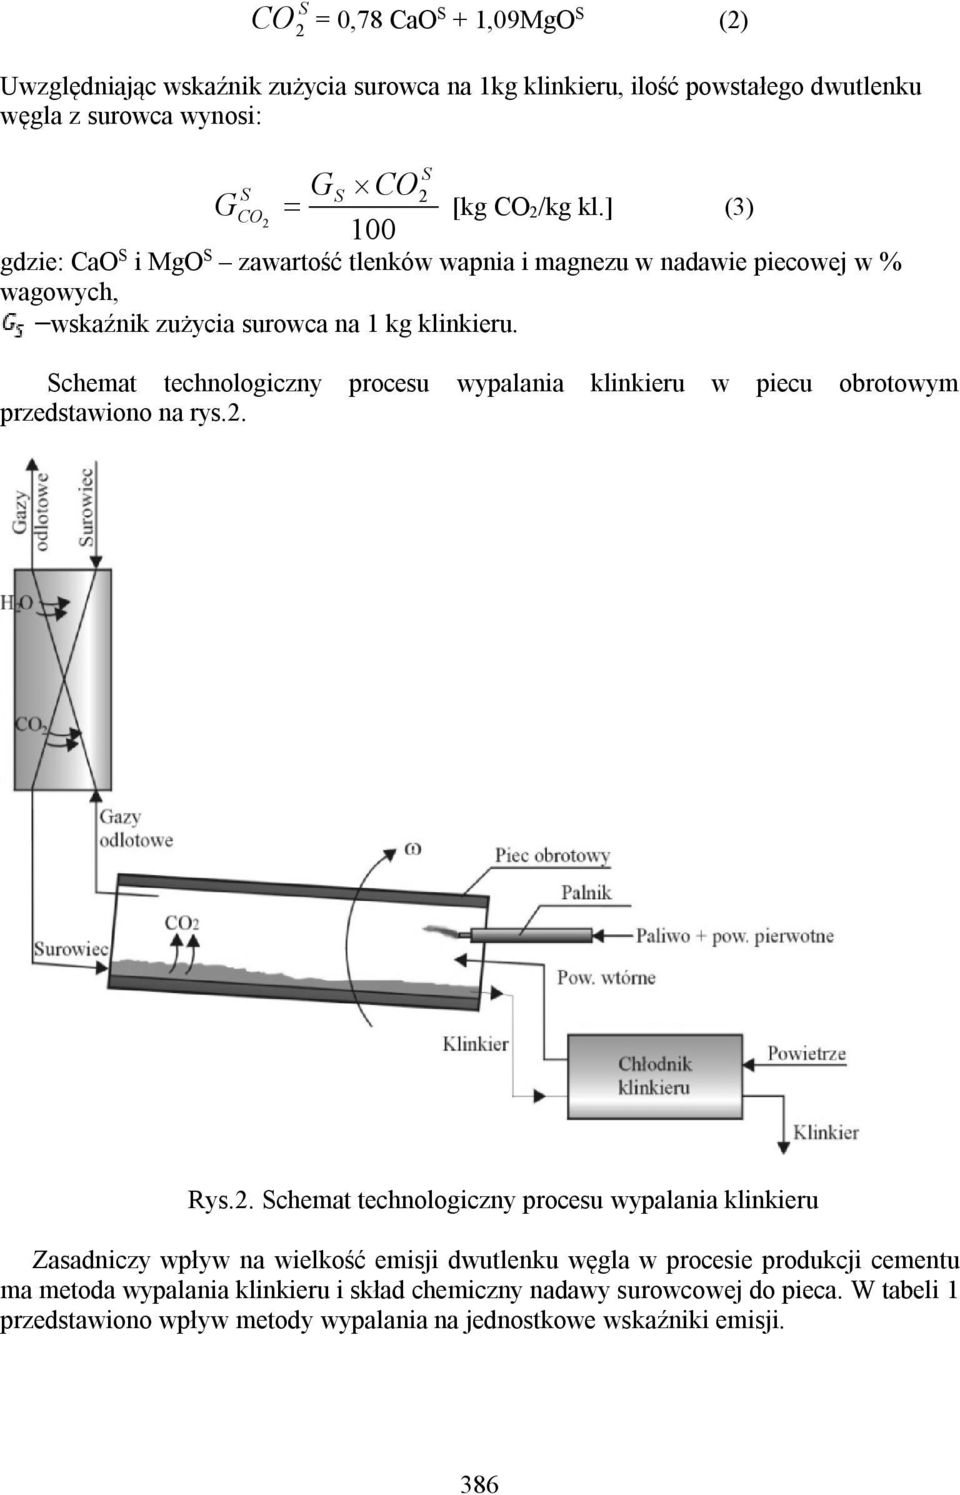 Schemat technologiczny procesu wypalania klinkieru w piecu obrotowym przedstawiono na rys.2.